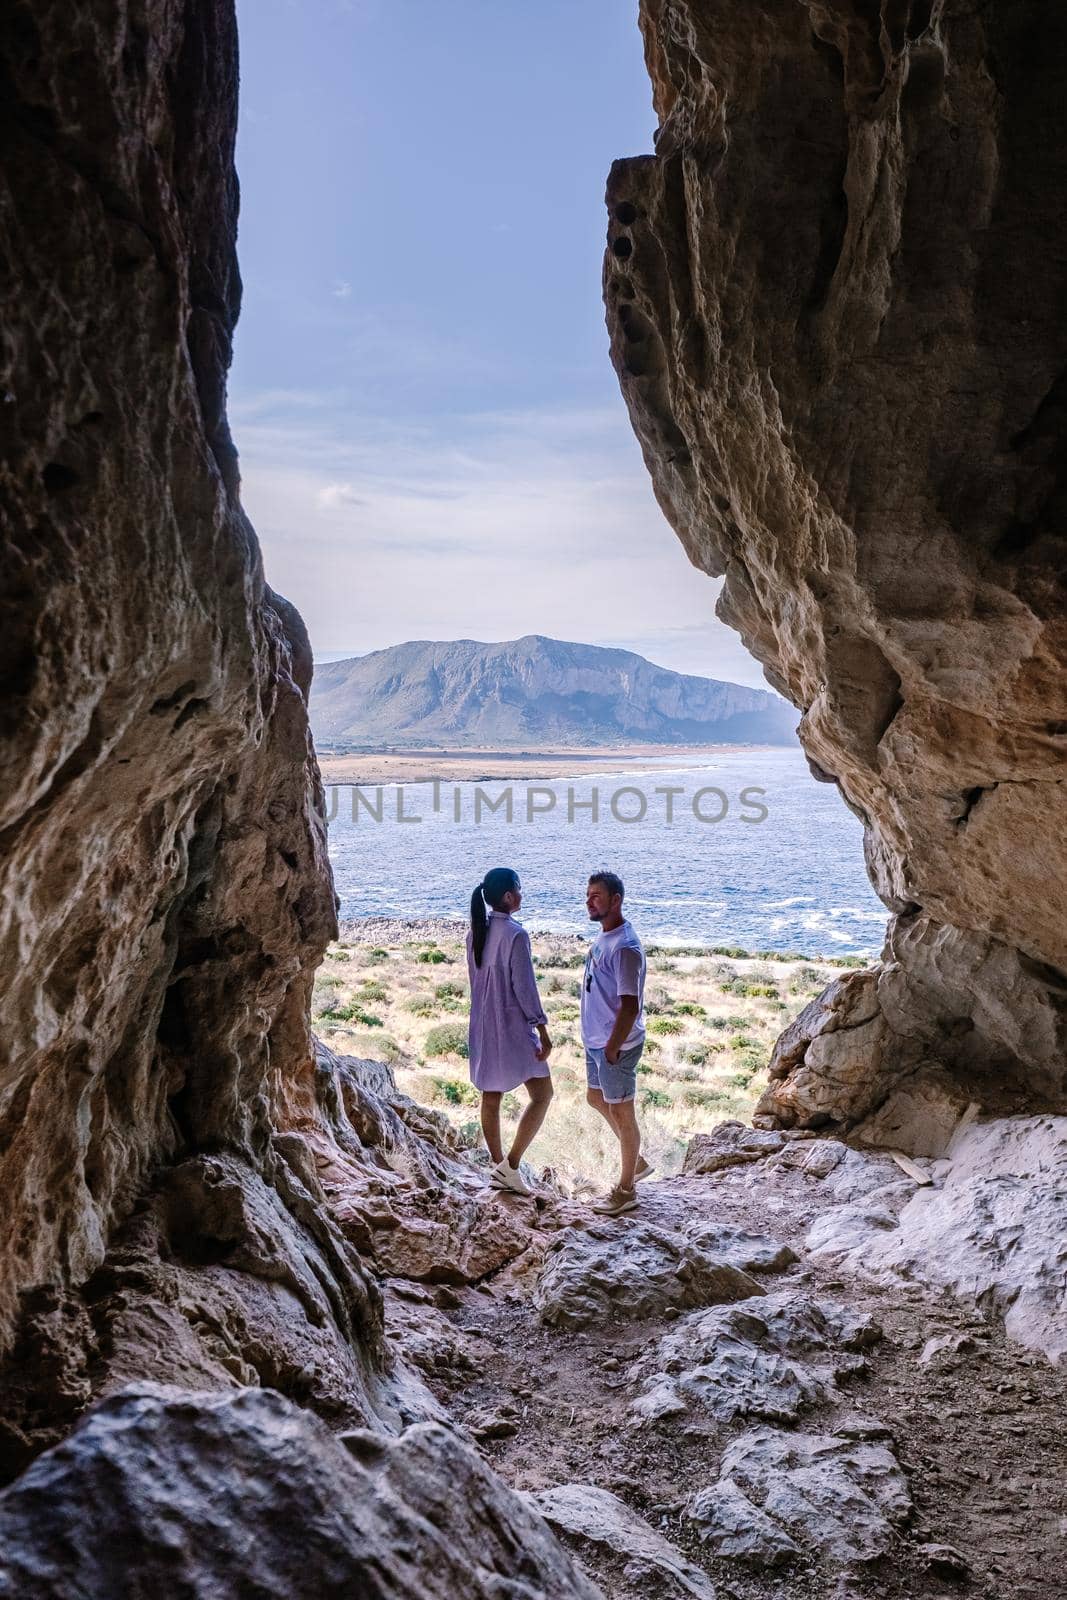 San Vito Lo Capo Sicily, San Vito lo Capo beach and Monte Monaco in background, north-western Sicily. cliffs and rocky coastline in Sicily